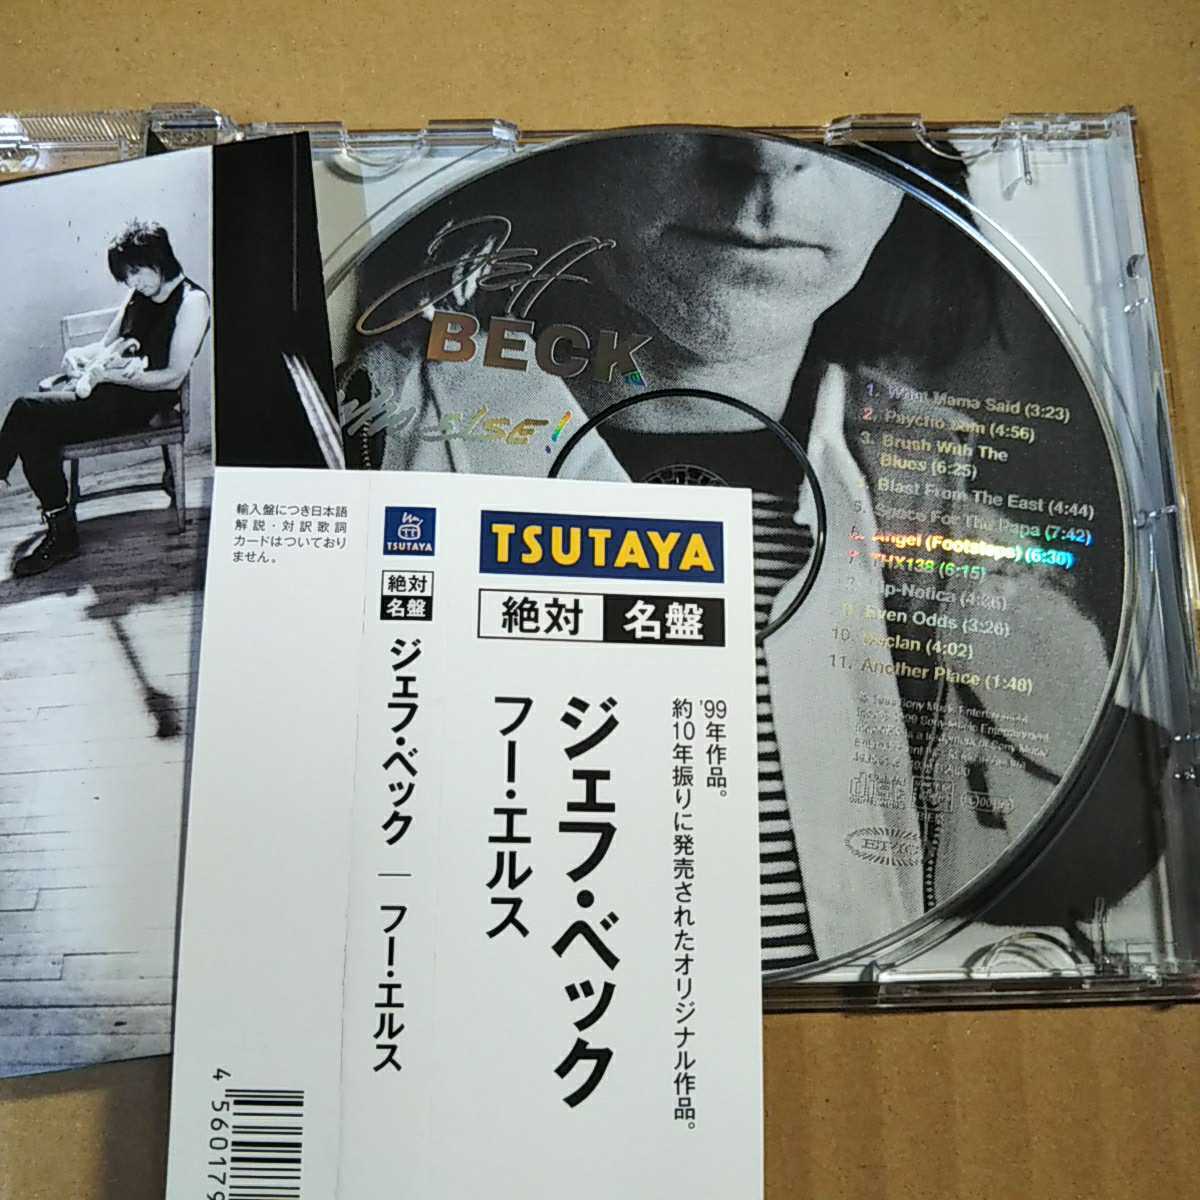 中古CD JEFF BECK / ジェフ・ベック『Who else!』輸入盤/TSUTAYA帯【1408】